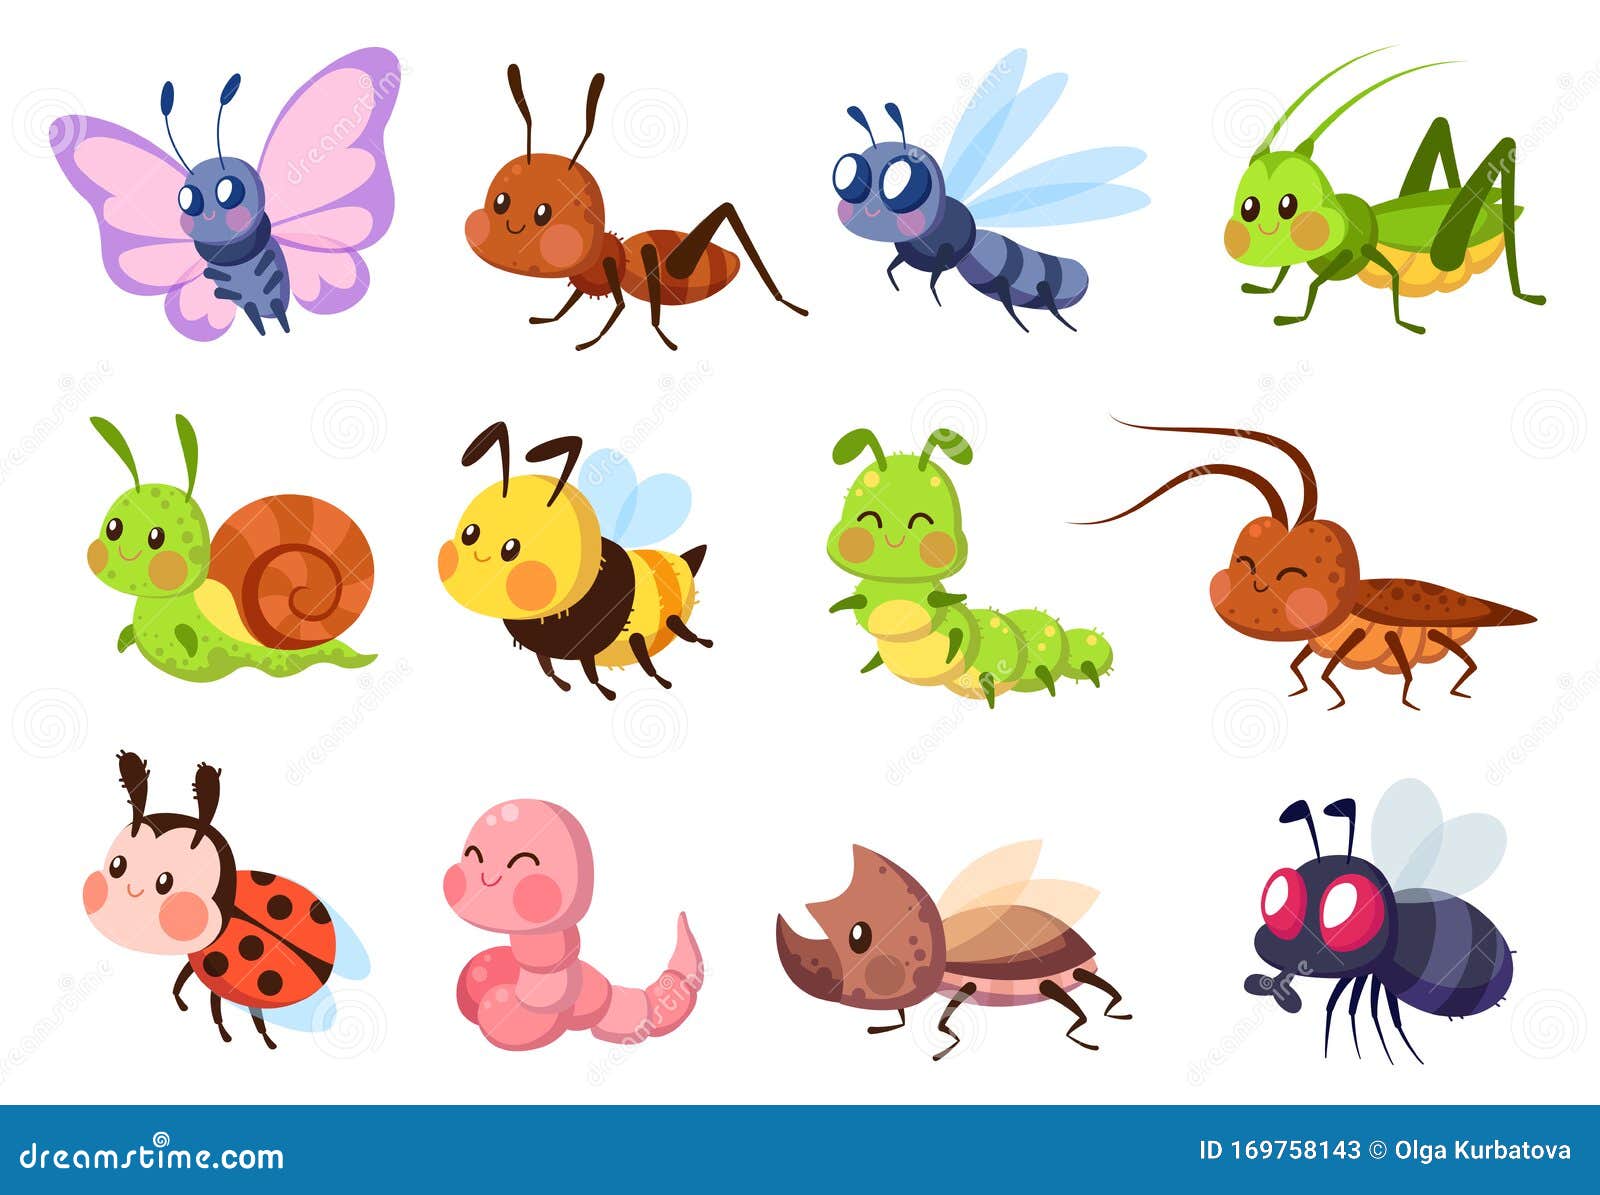 可爱的昆虫蜜蜂与瓢虫 虫 蜗牛与蝴蝶 毛虫螳螂 蜻蜓 苍蝇向量例证 插画包括有蝴蝶 蜈蚣